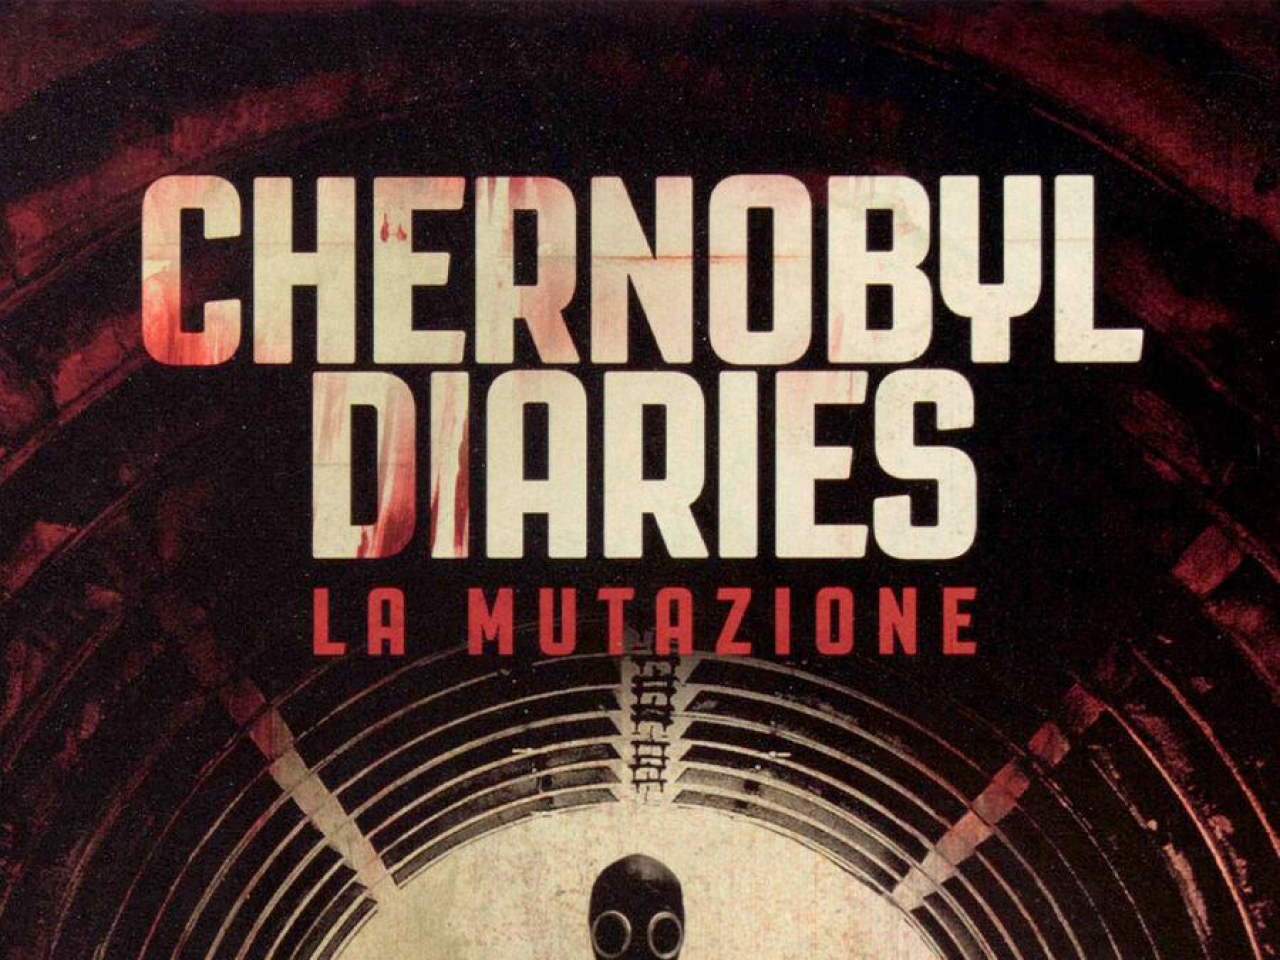 Chernobyl Diaries - La Mutazione